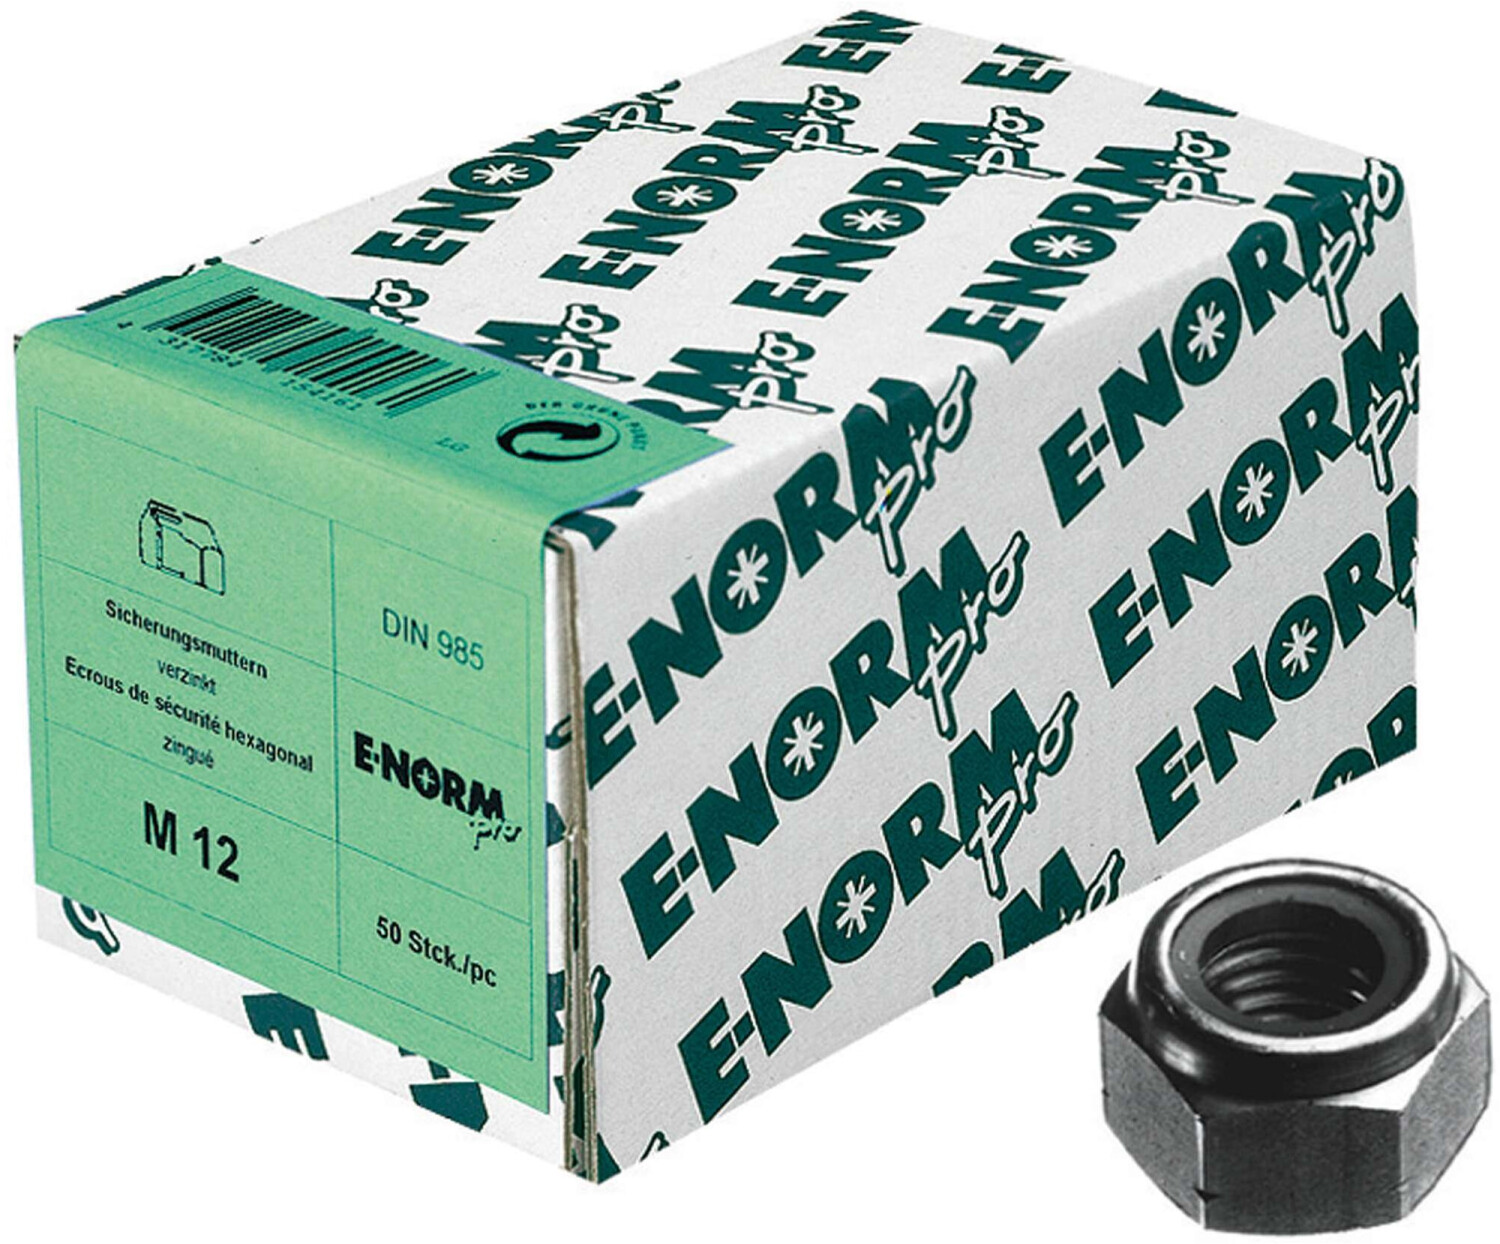 E-NORMpro Sicherungsmutter DIN 985 Edelstahl A2 M8 100 Stück) ab 4,49 €